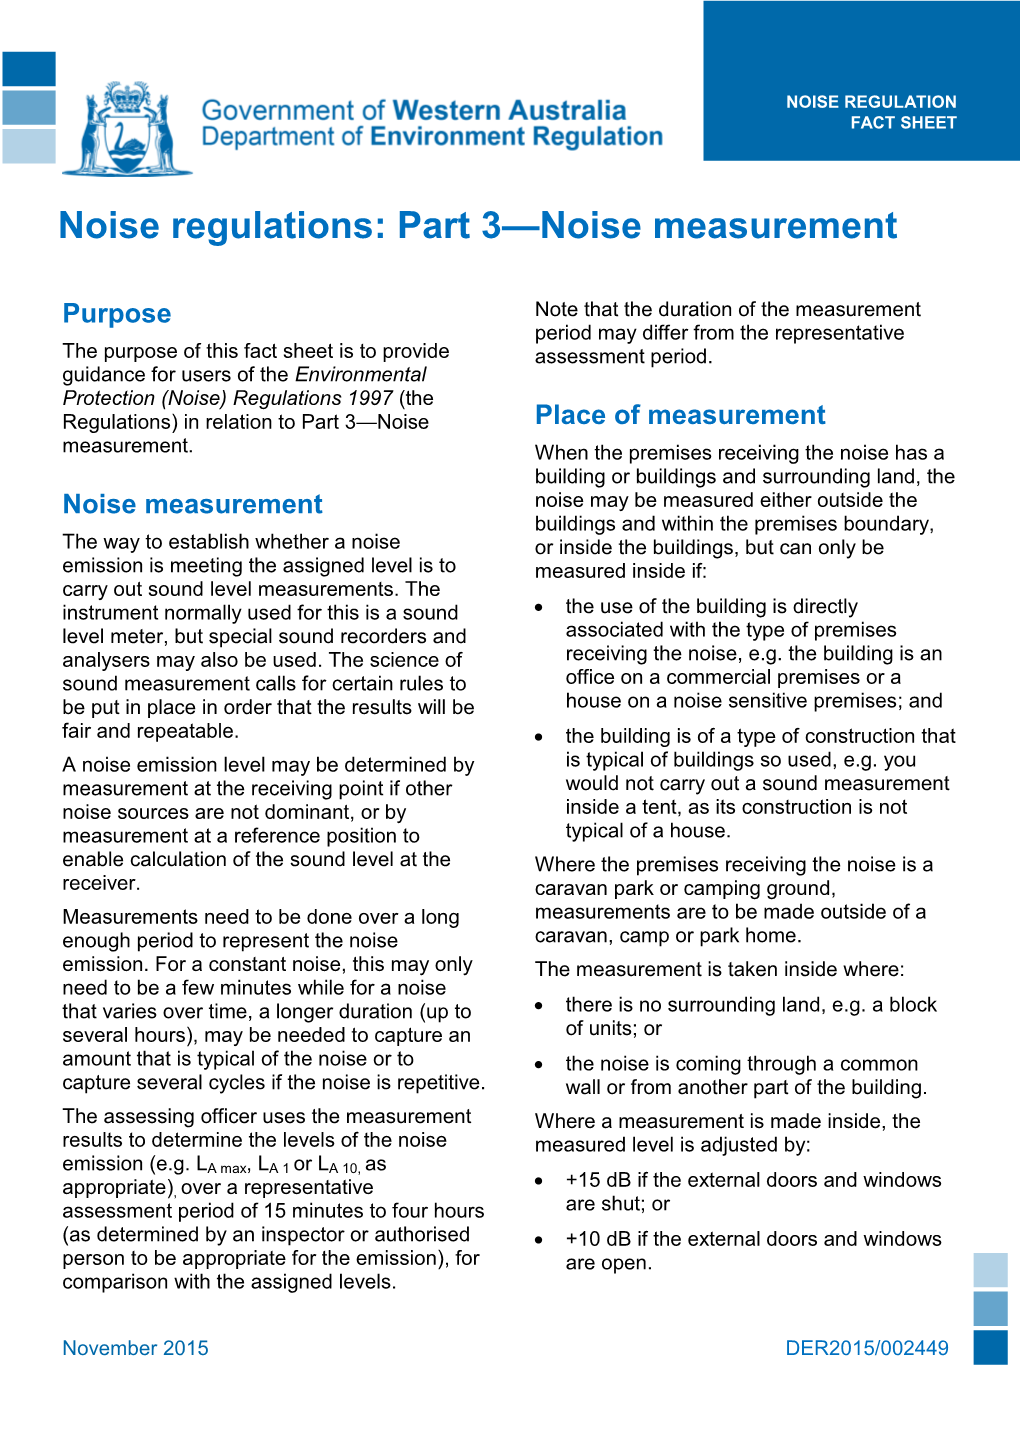 Part 3—Noise Measurement